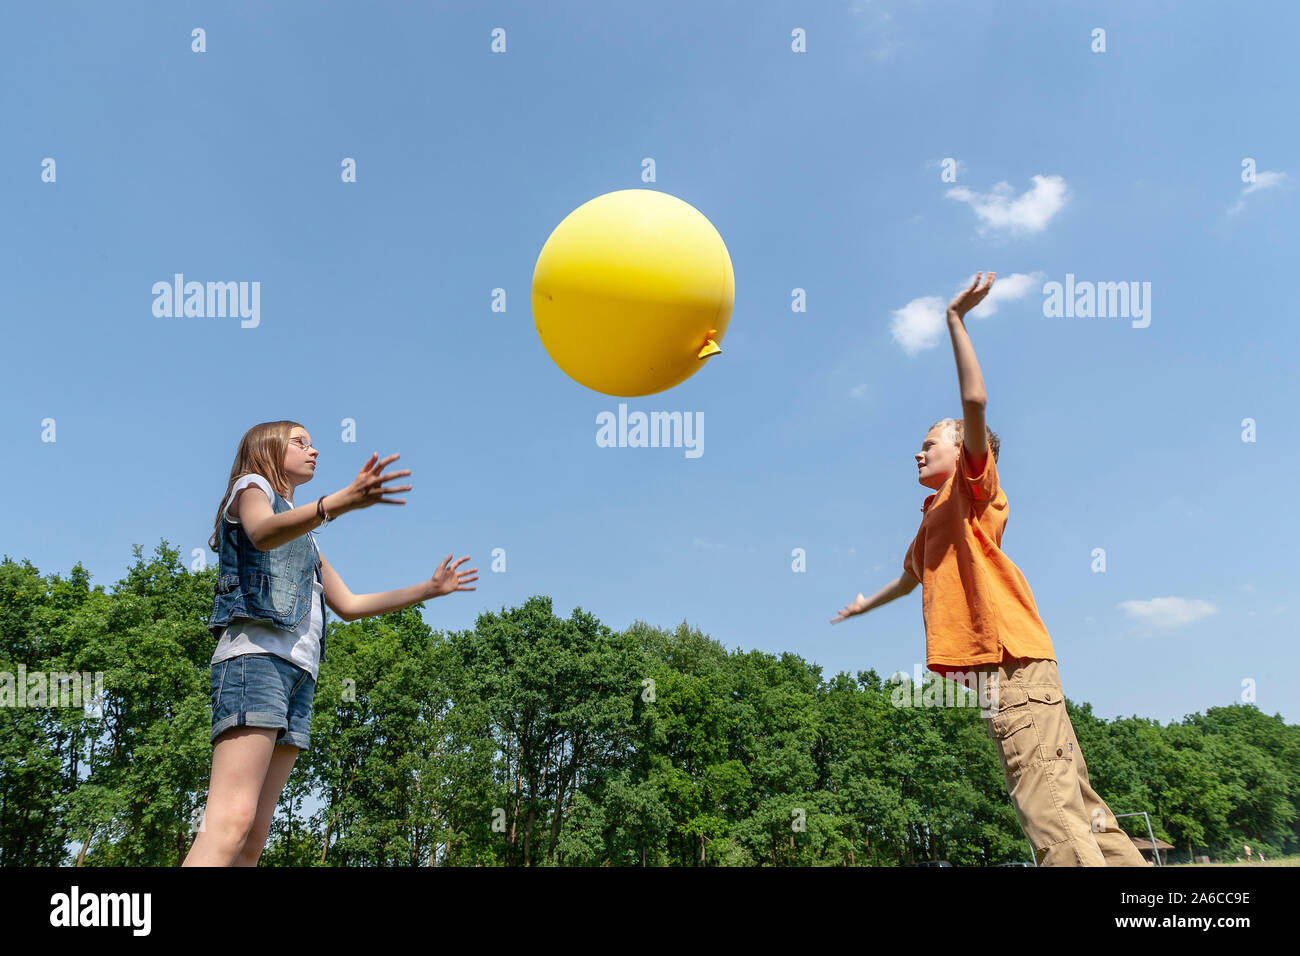 Un garçon et une fille sont en train de jouer avec un gros ballon jaune. Banque D'Images